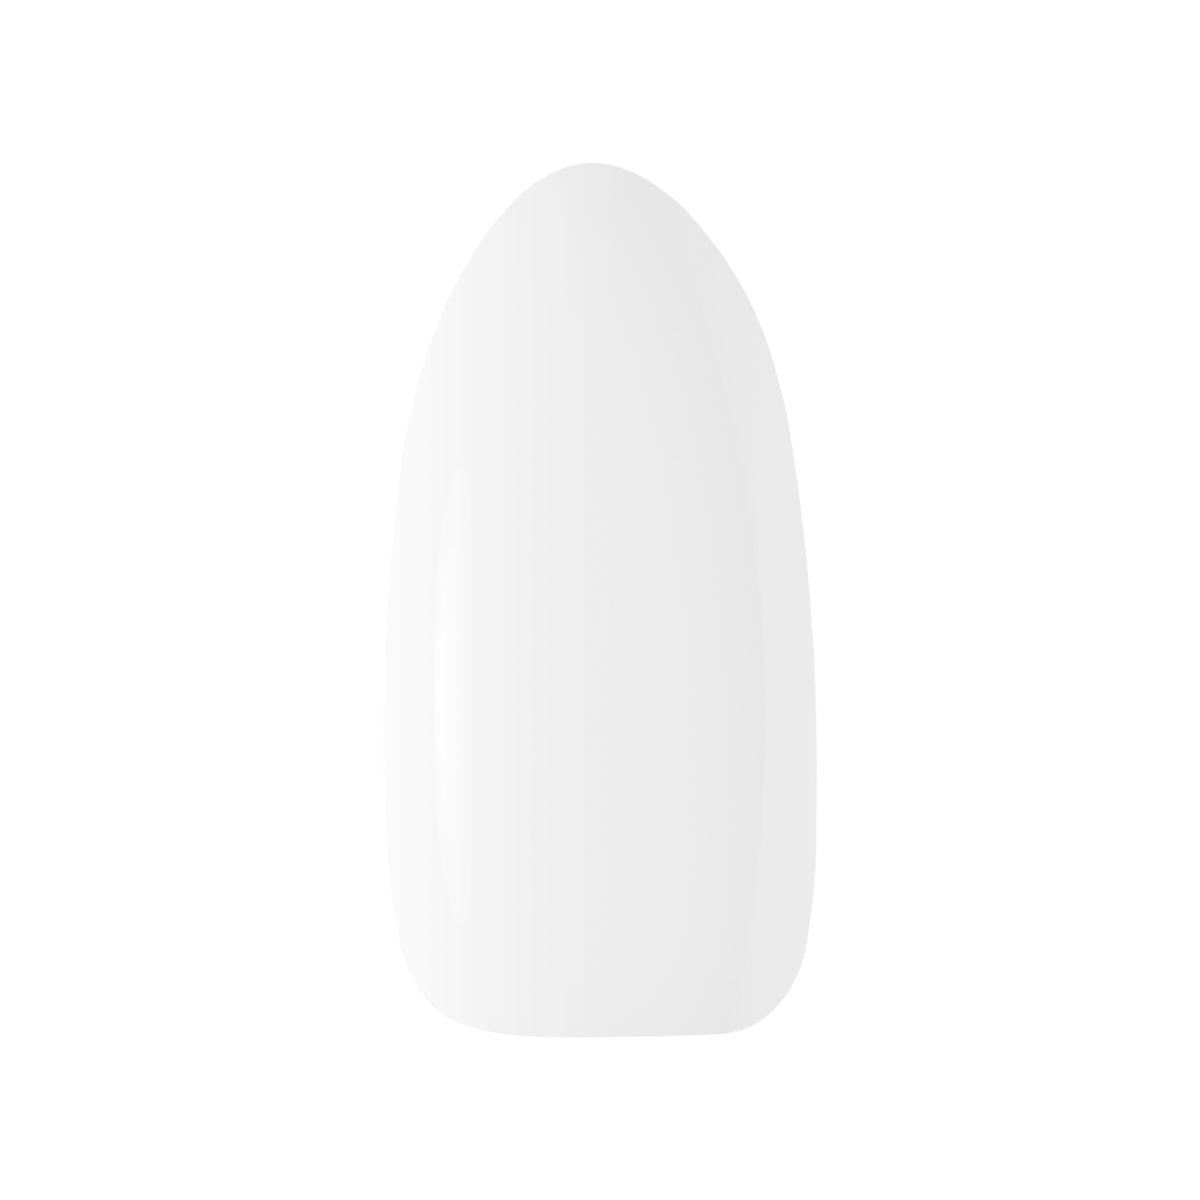 OCHO NAILS Hybrid nail polish white 001 -5 g